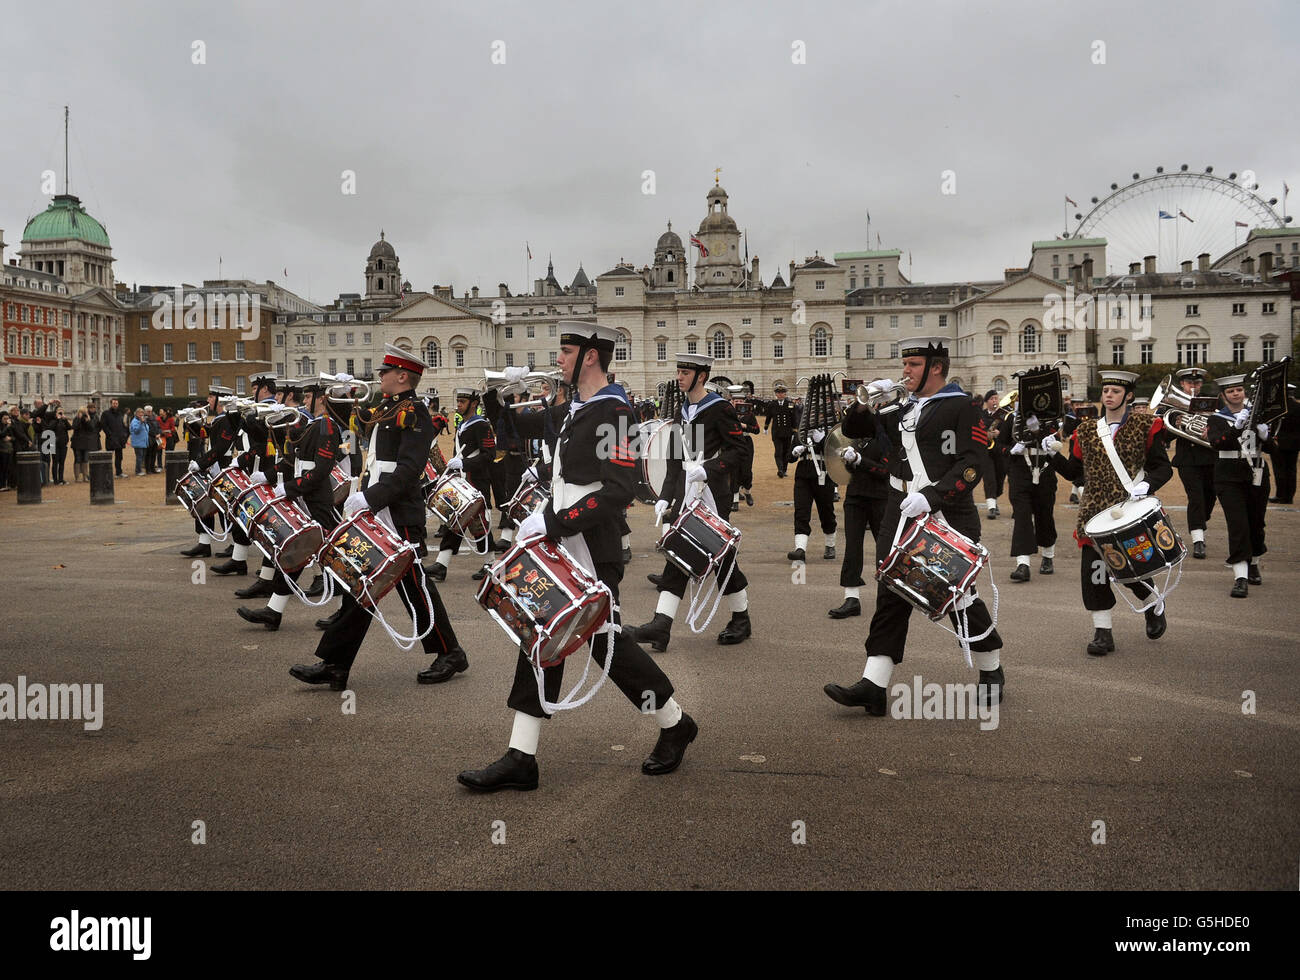 Les cadets quittent la parade des gardes à cheval tandis que les cadets de la Marine participent à une parade de la journée de Trafalgar, de la parade des gardes à cheval à Trafalgar Square à Londres. Banque D'Images